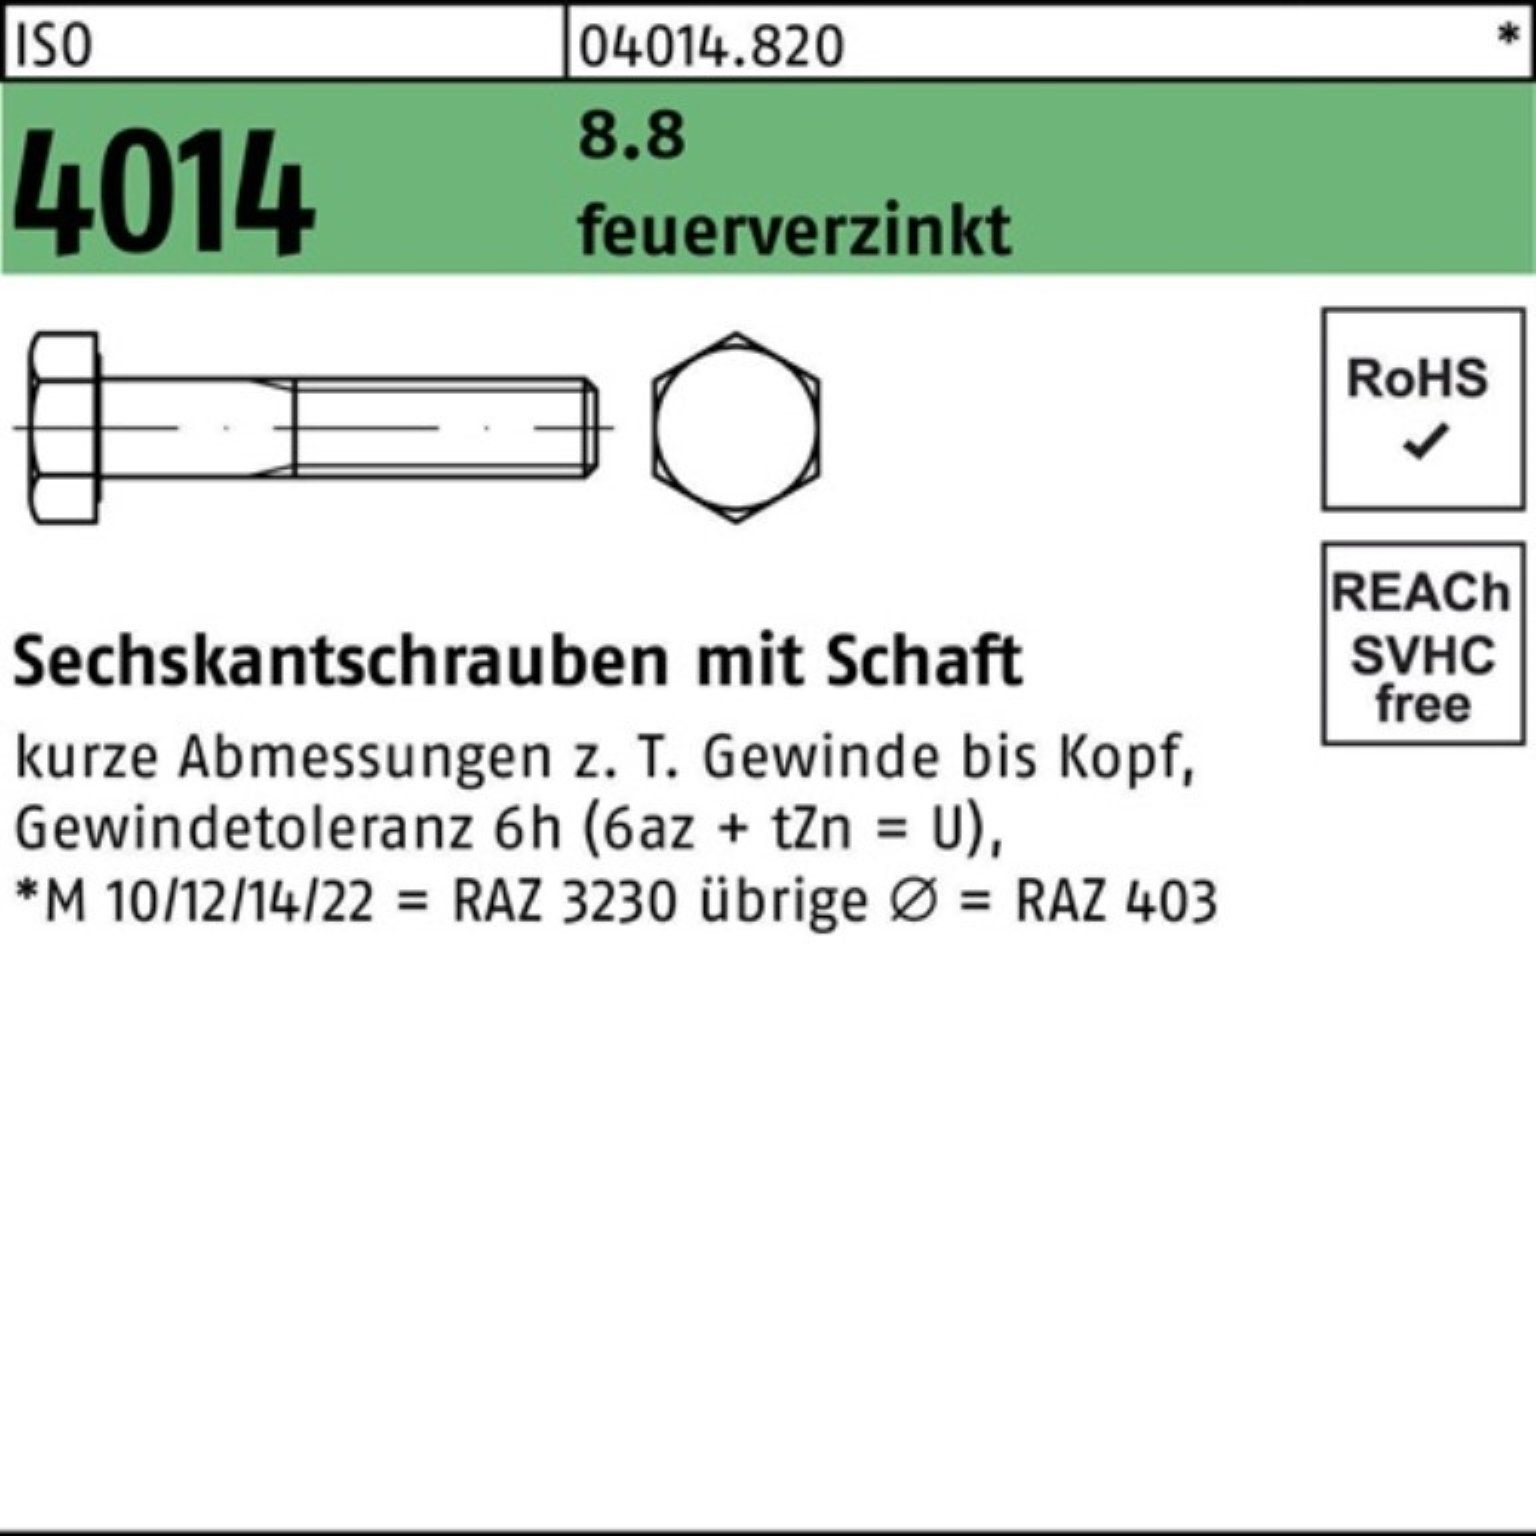 Bufab Sechskantschraube 100er Pack Sechskantschraube ISO 4014 Schaft M30x 200 8.8 feuerverz. 1